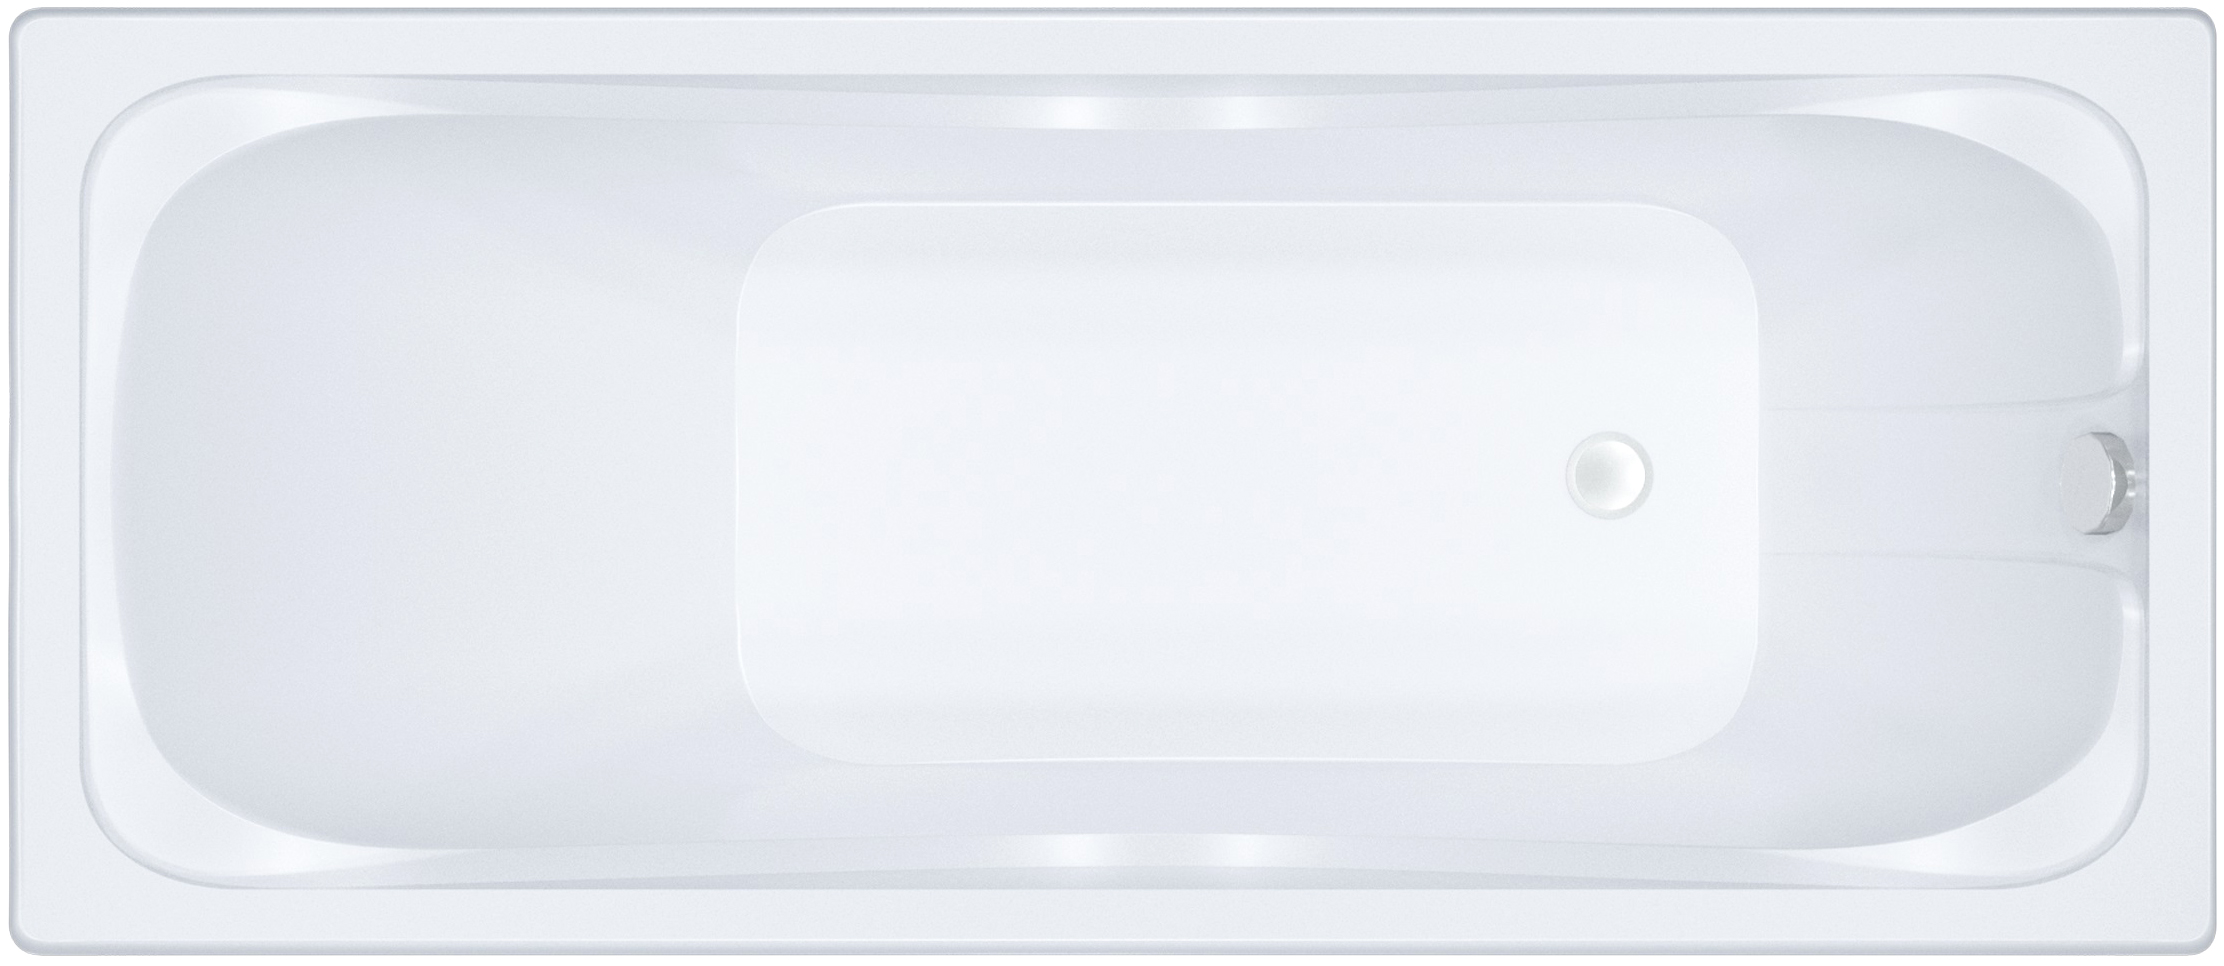 Акриловая ванна DIWO Самара 170x75, пристенная, прямоугольная, российская, в современном стиле, с ножками 506659 - 0